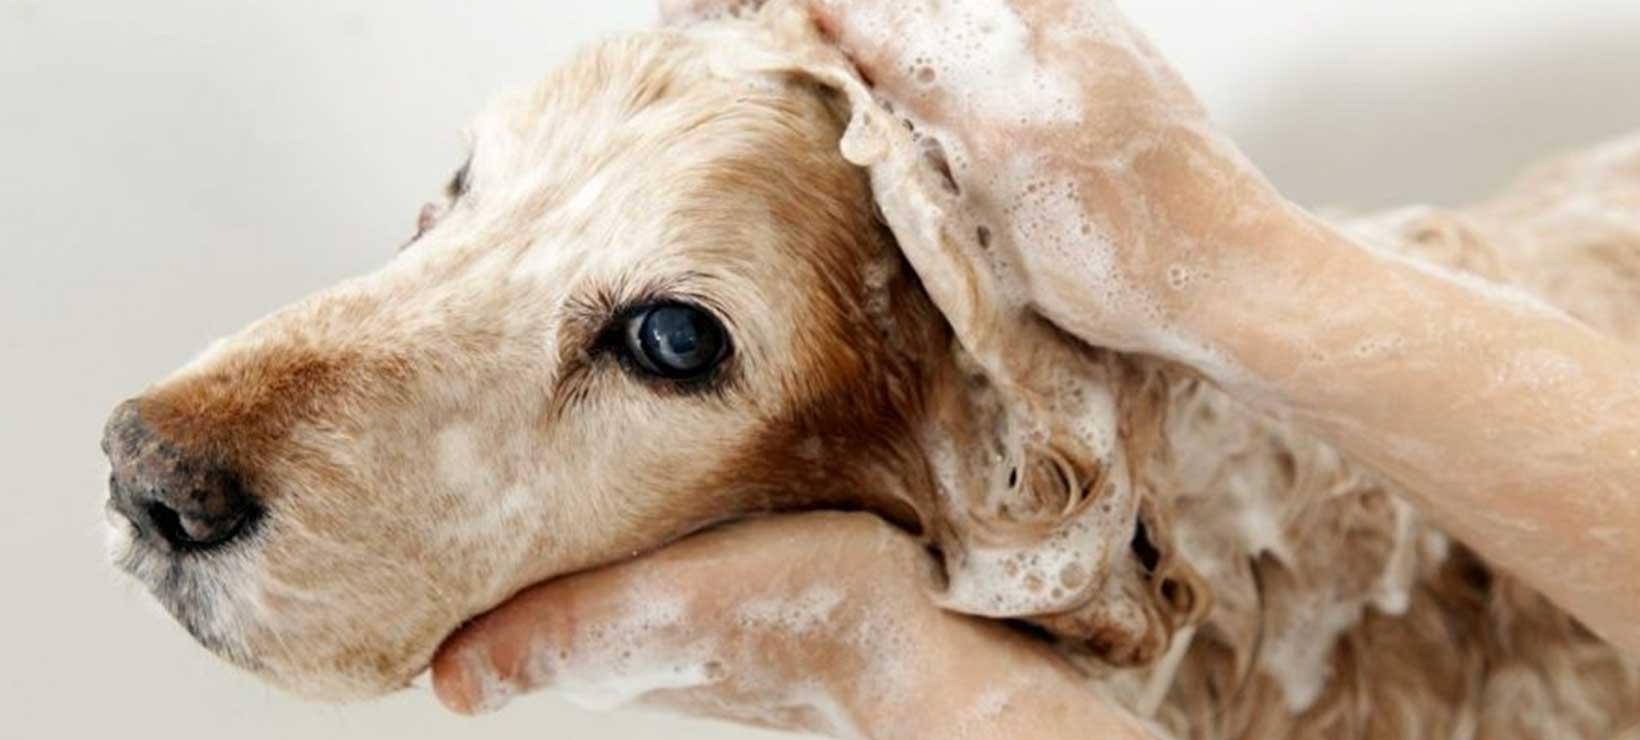 Washing a Dog